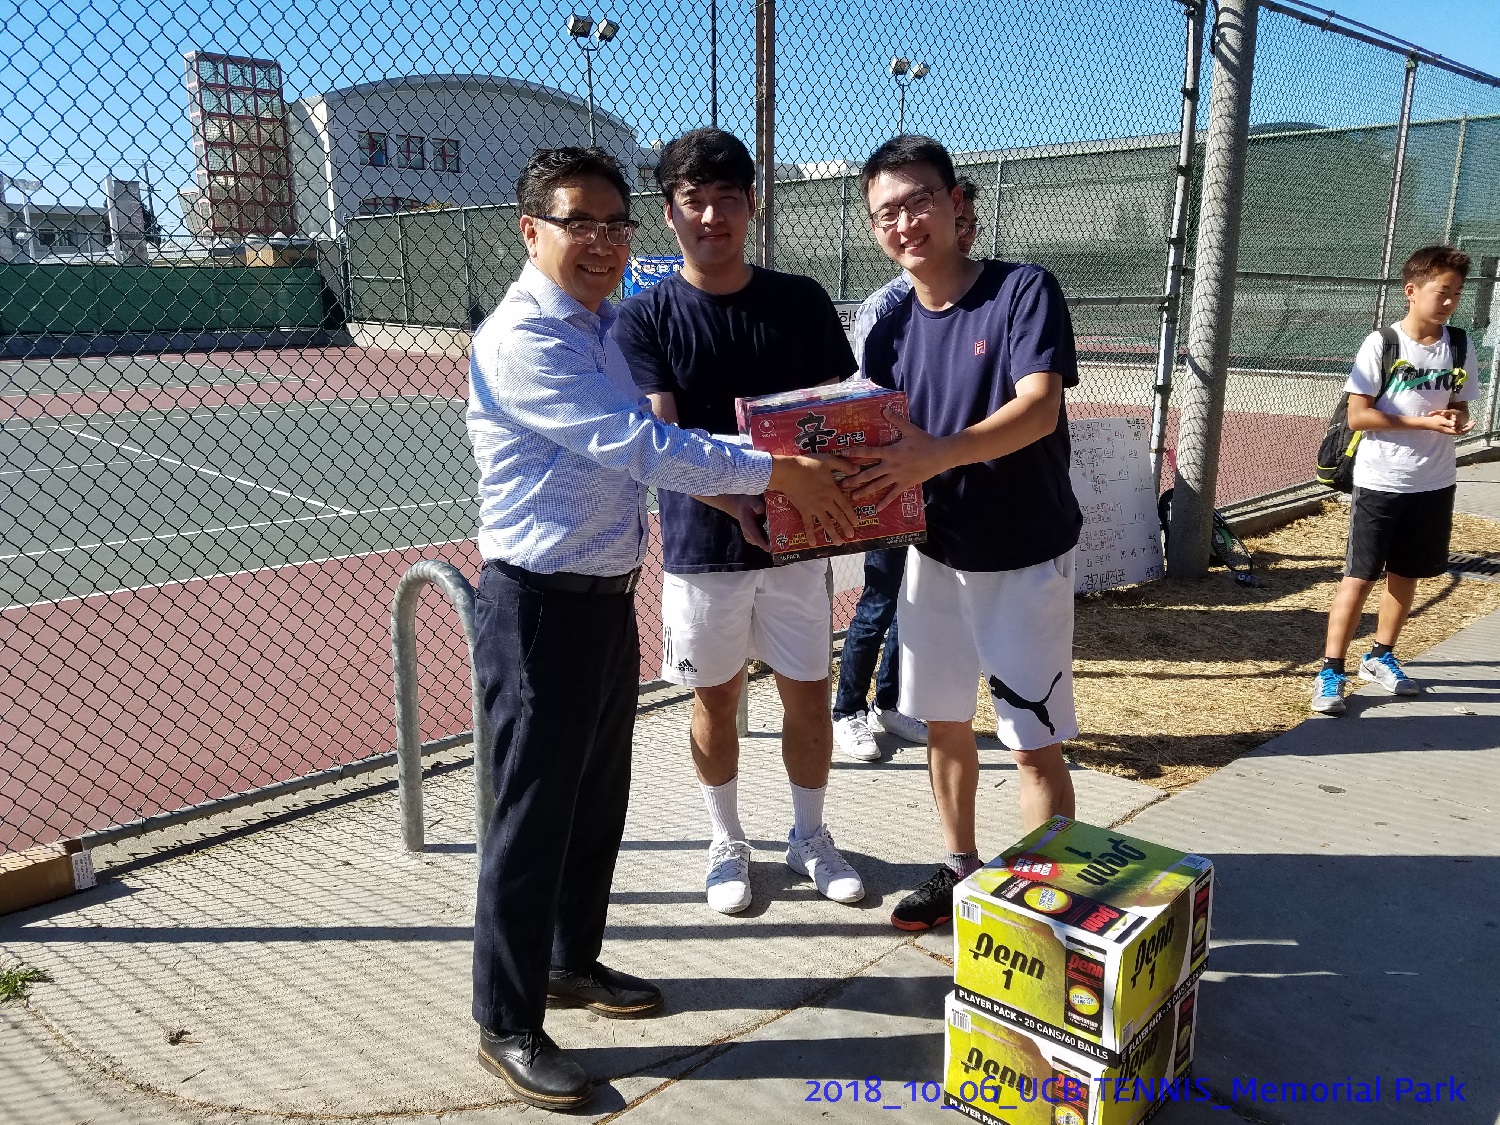 resized_2018_10_06_UCB Tennis at Memorial Park_152329.jpg